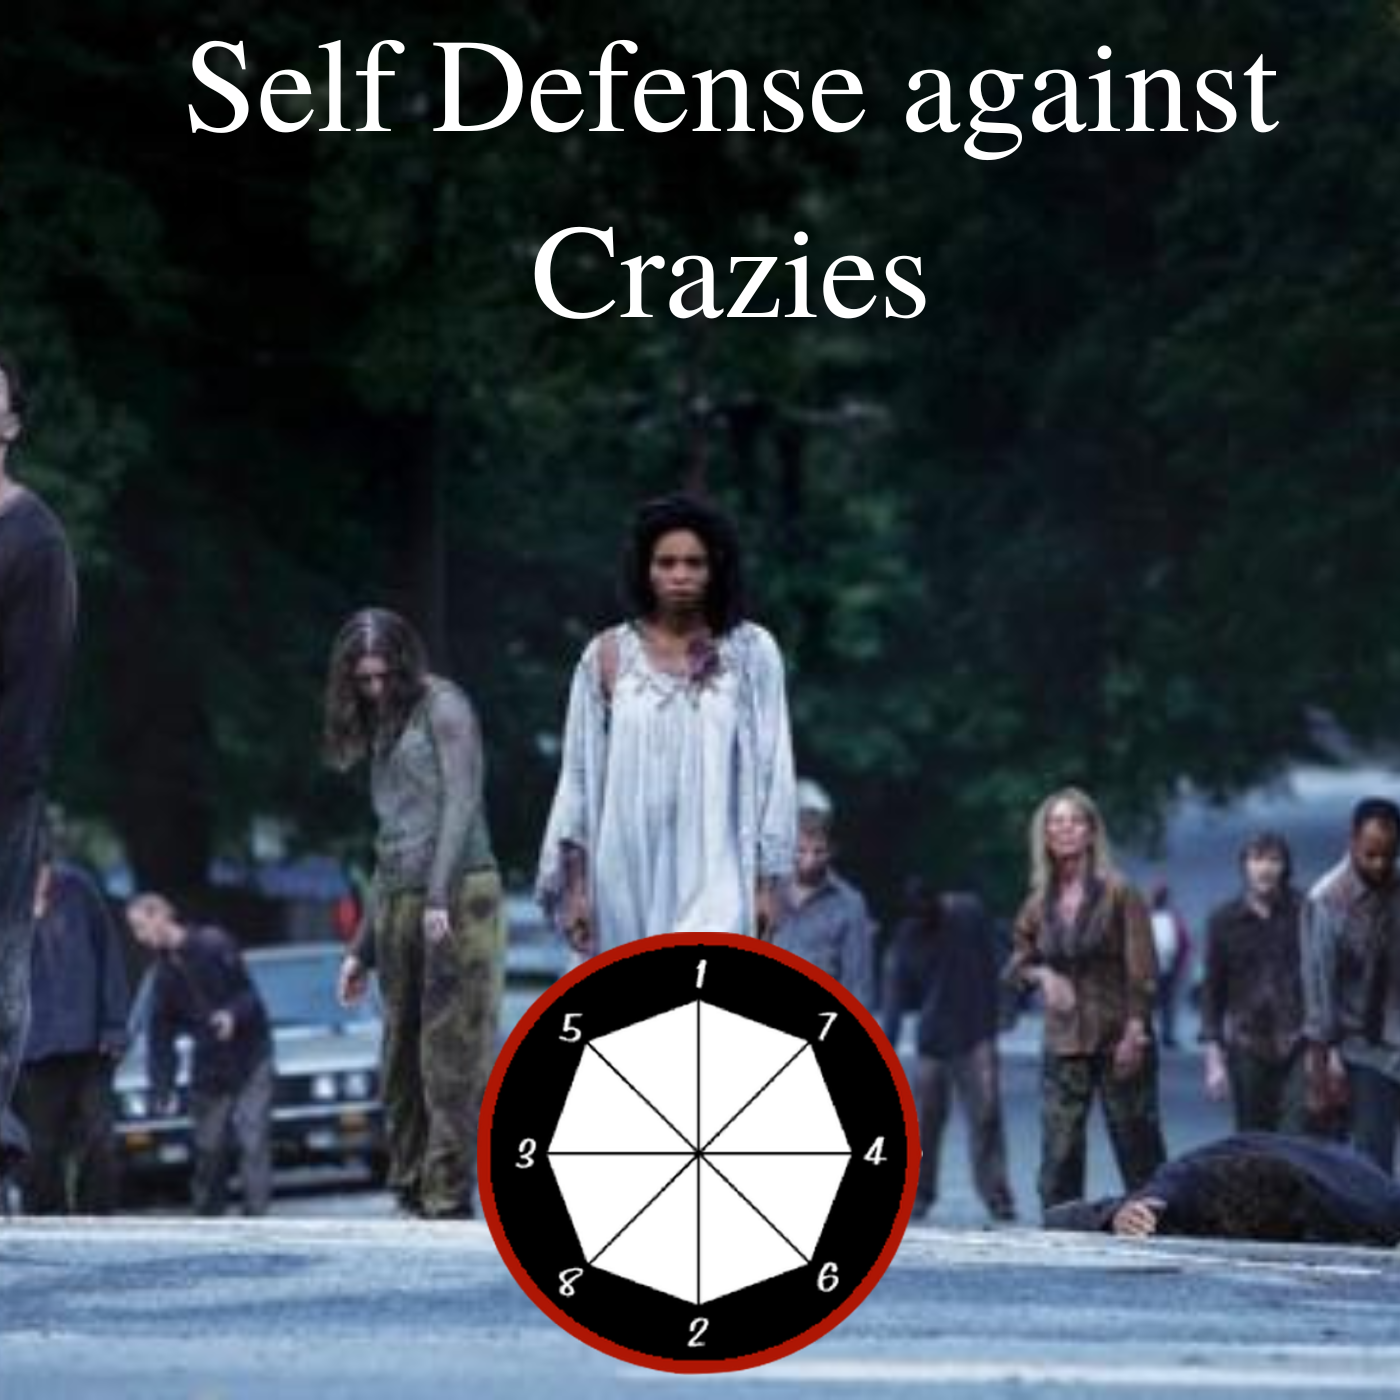 Self Defense against Crazies